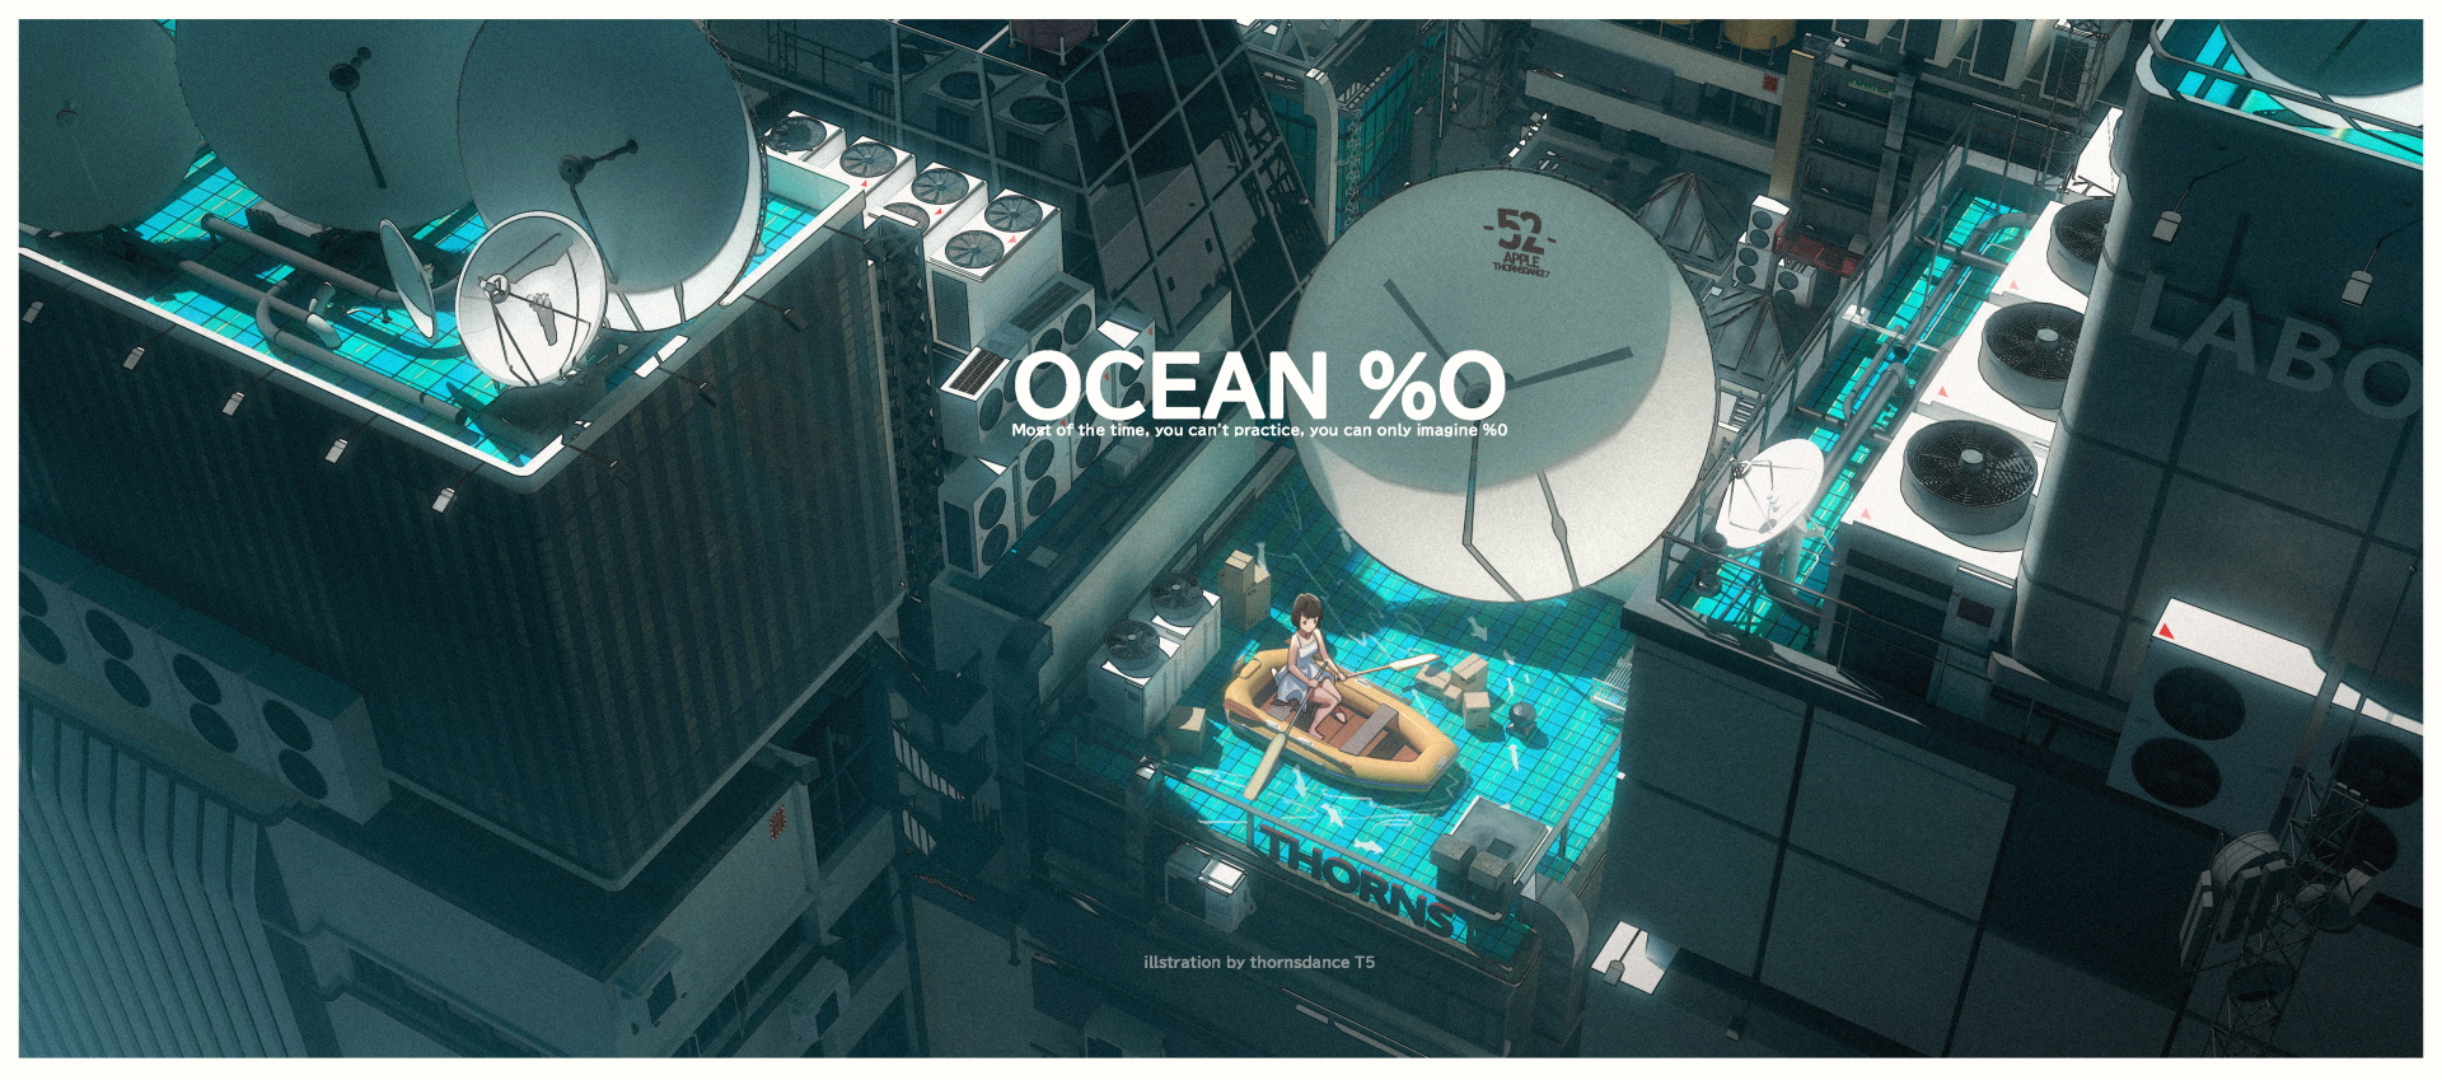 Ocean %0 by T5